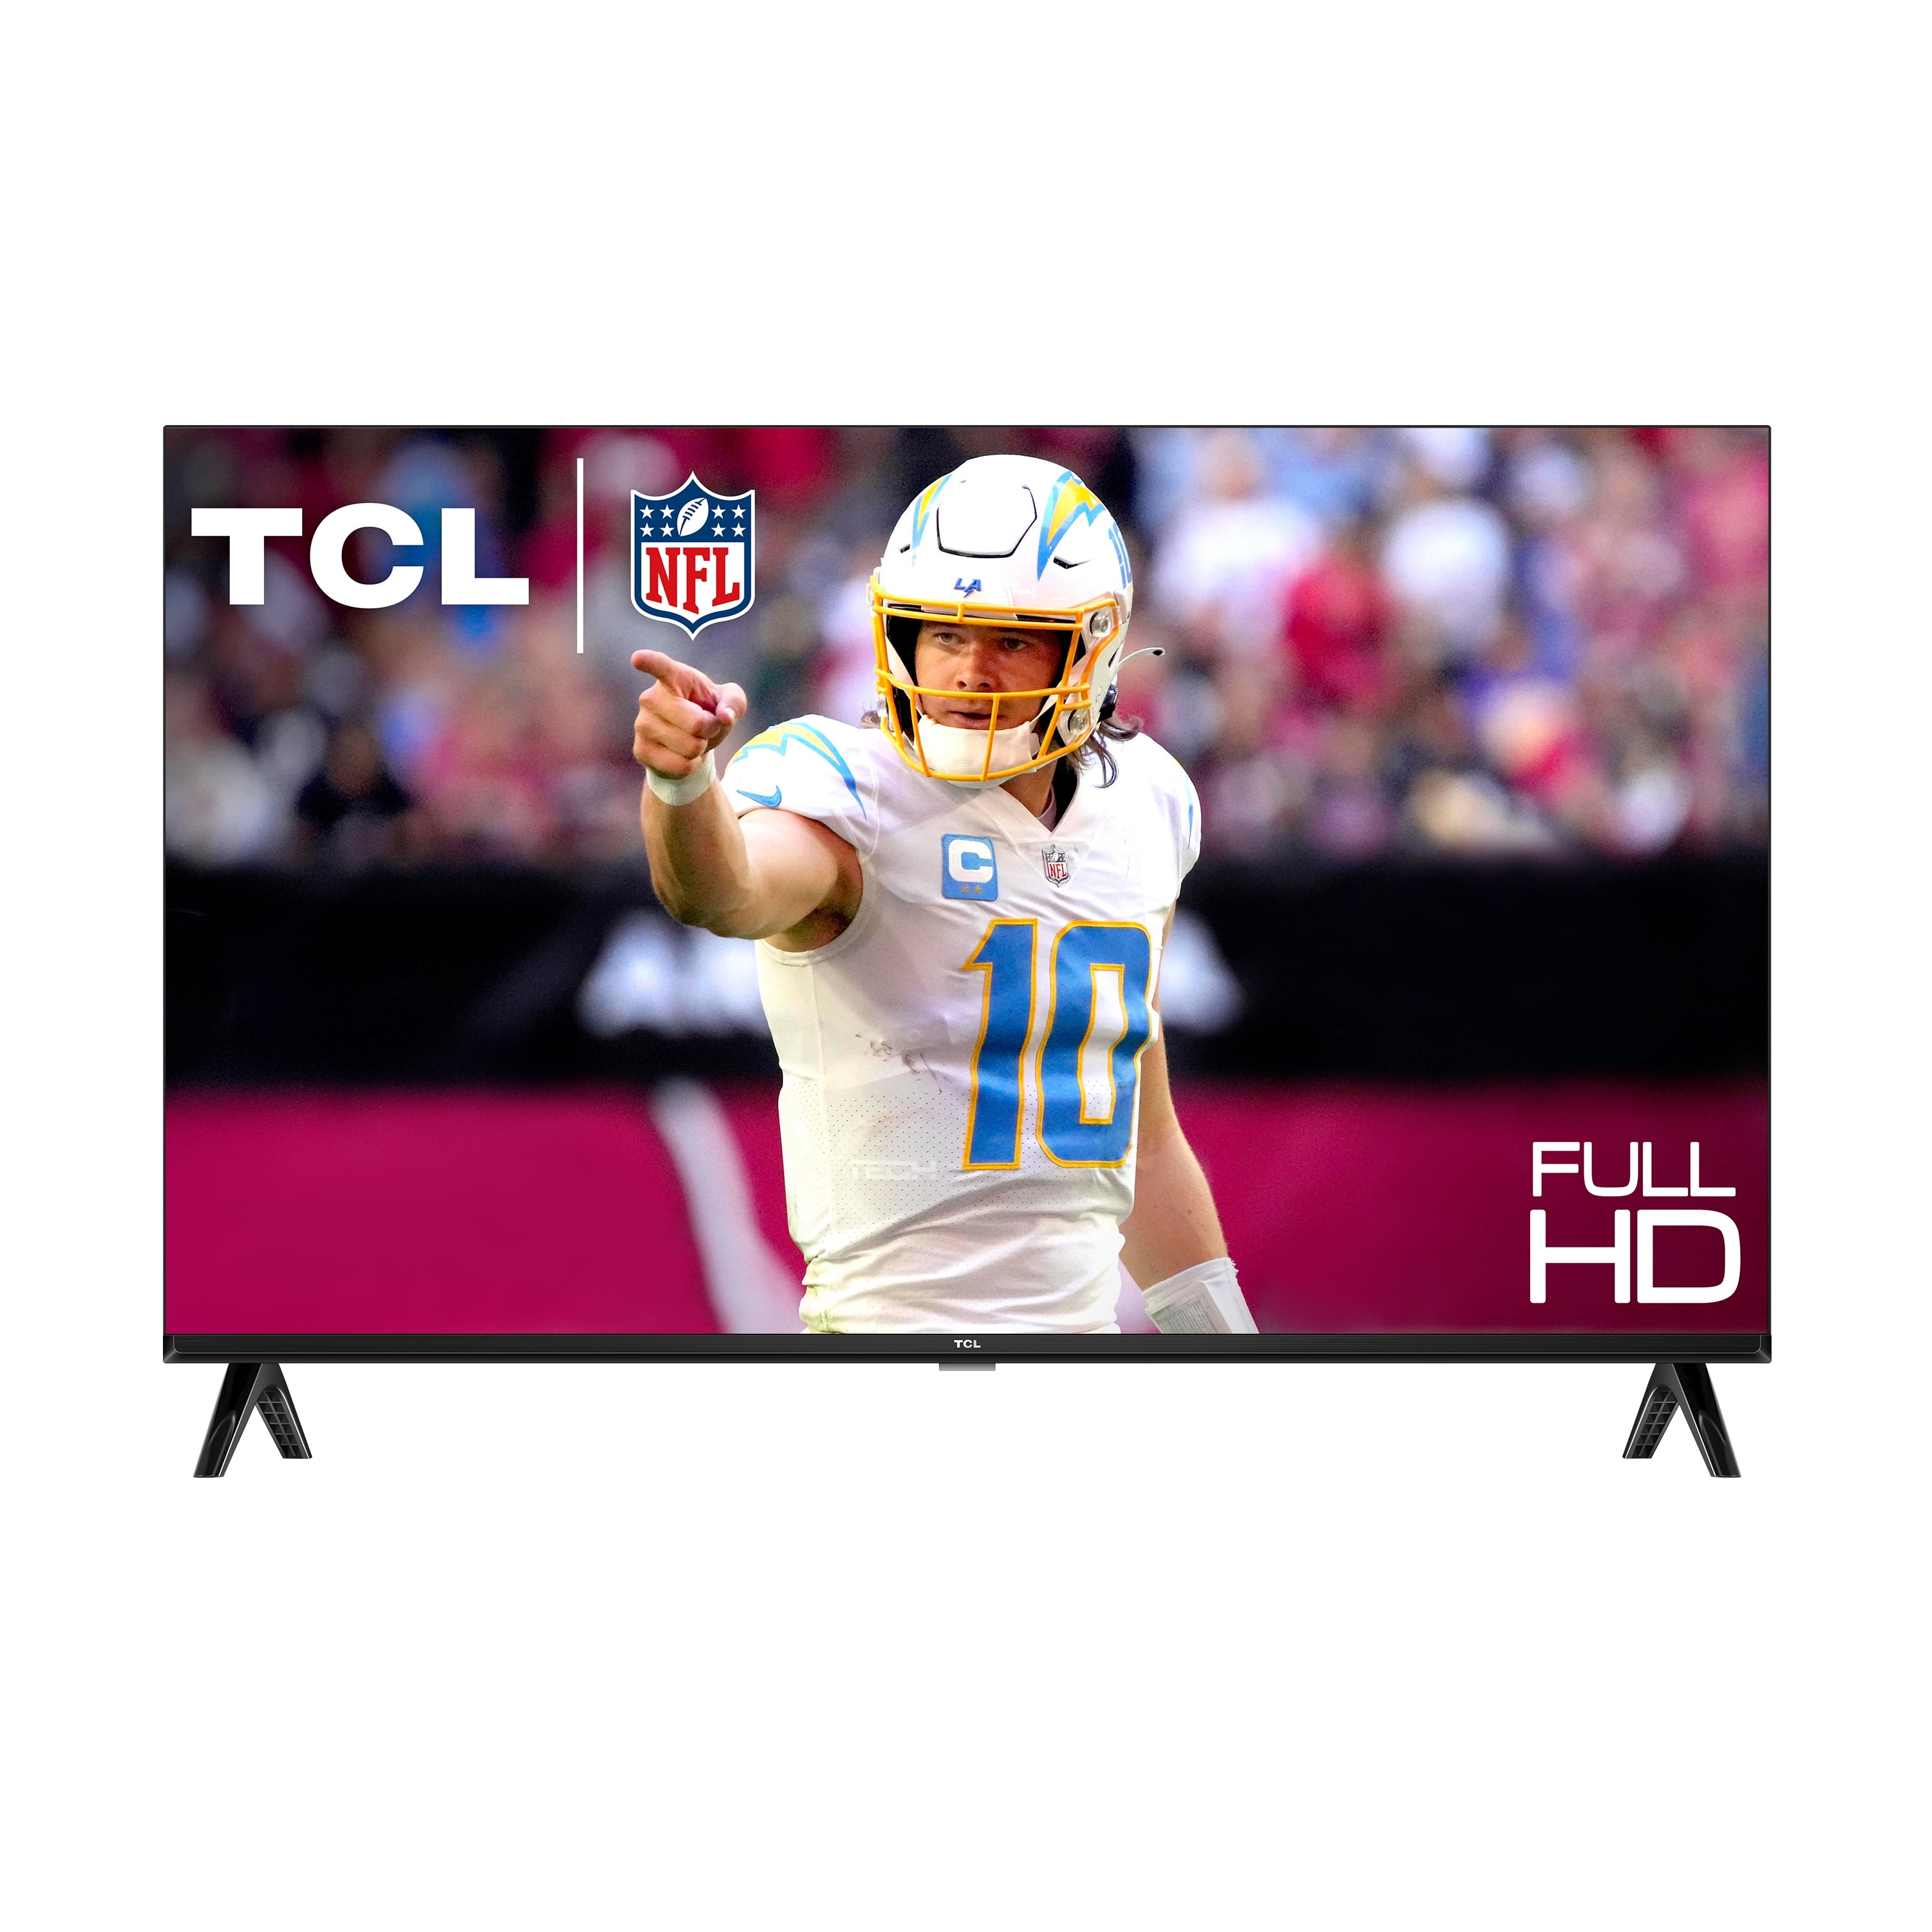 TCL 40S325 40 1080p LED Smart HDTV - Black for sale online